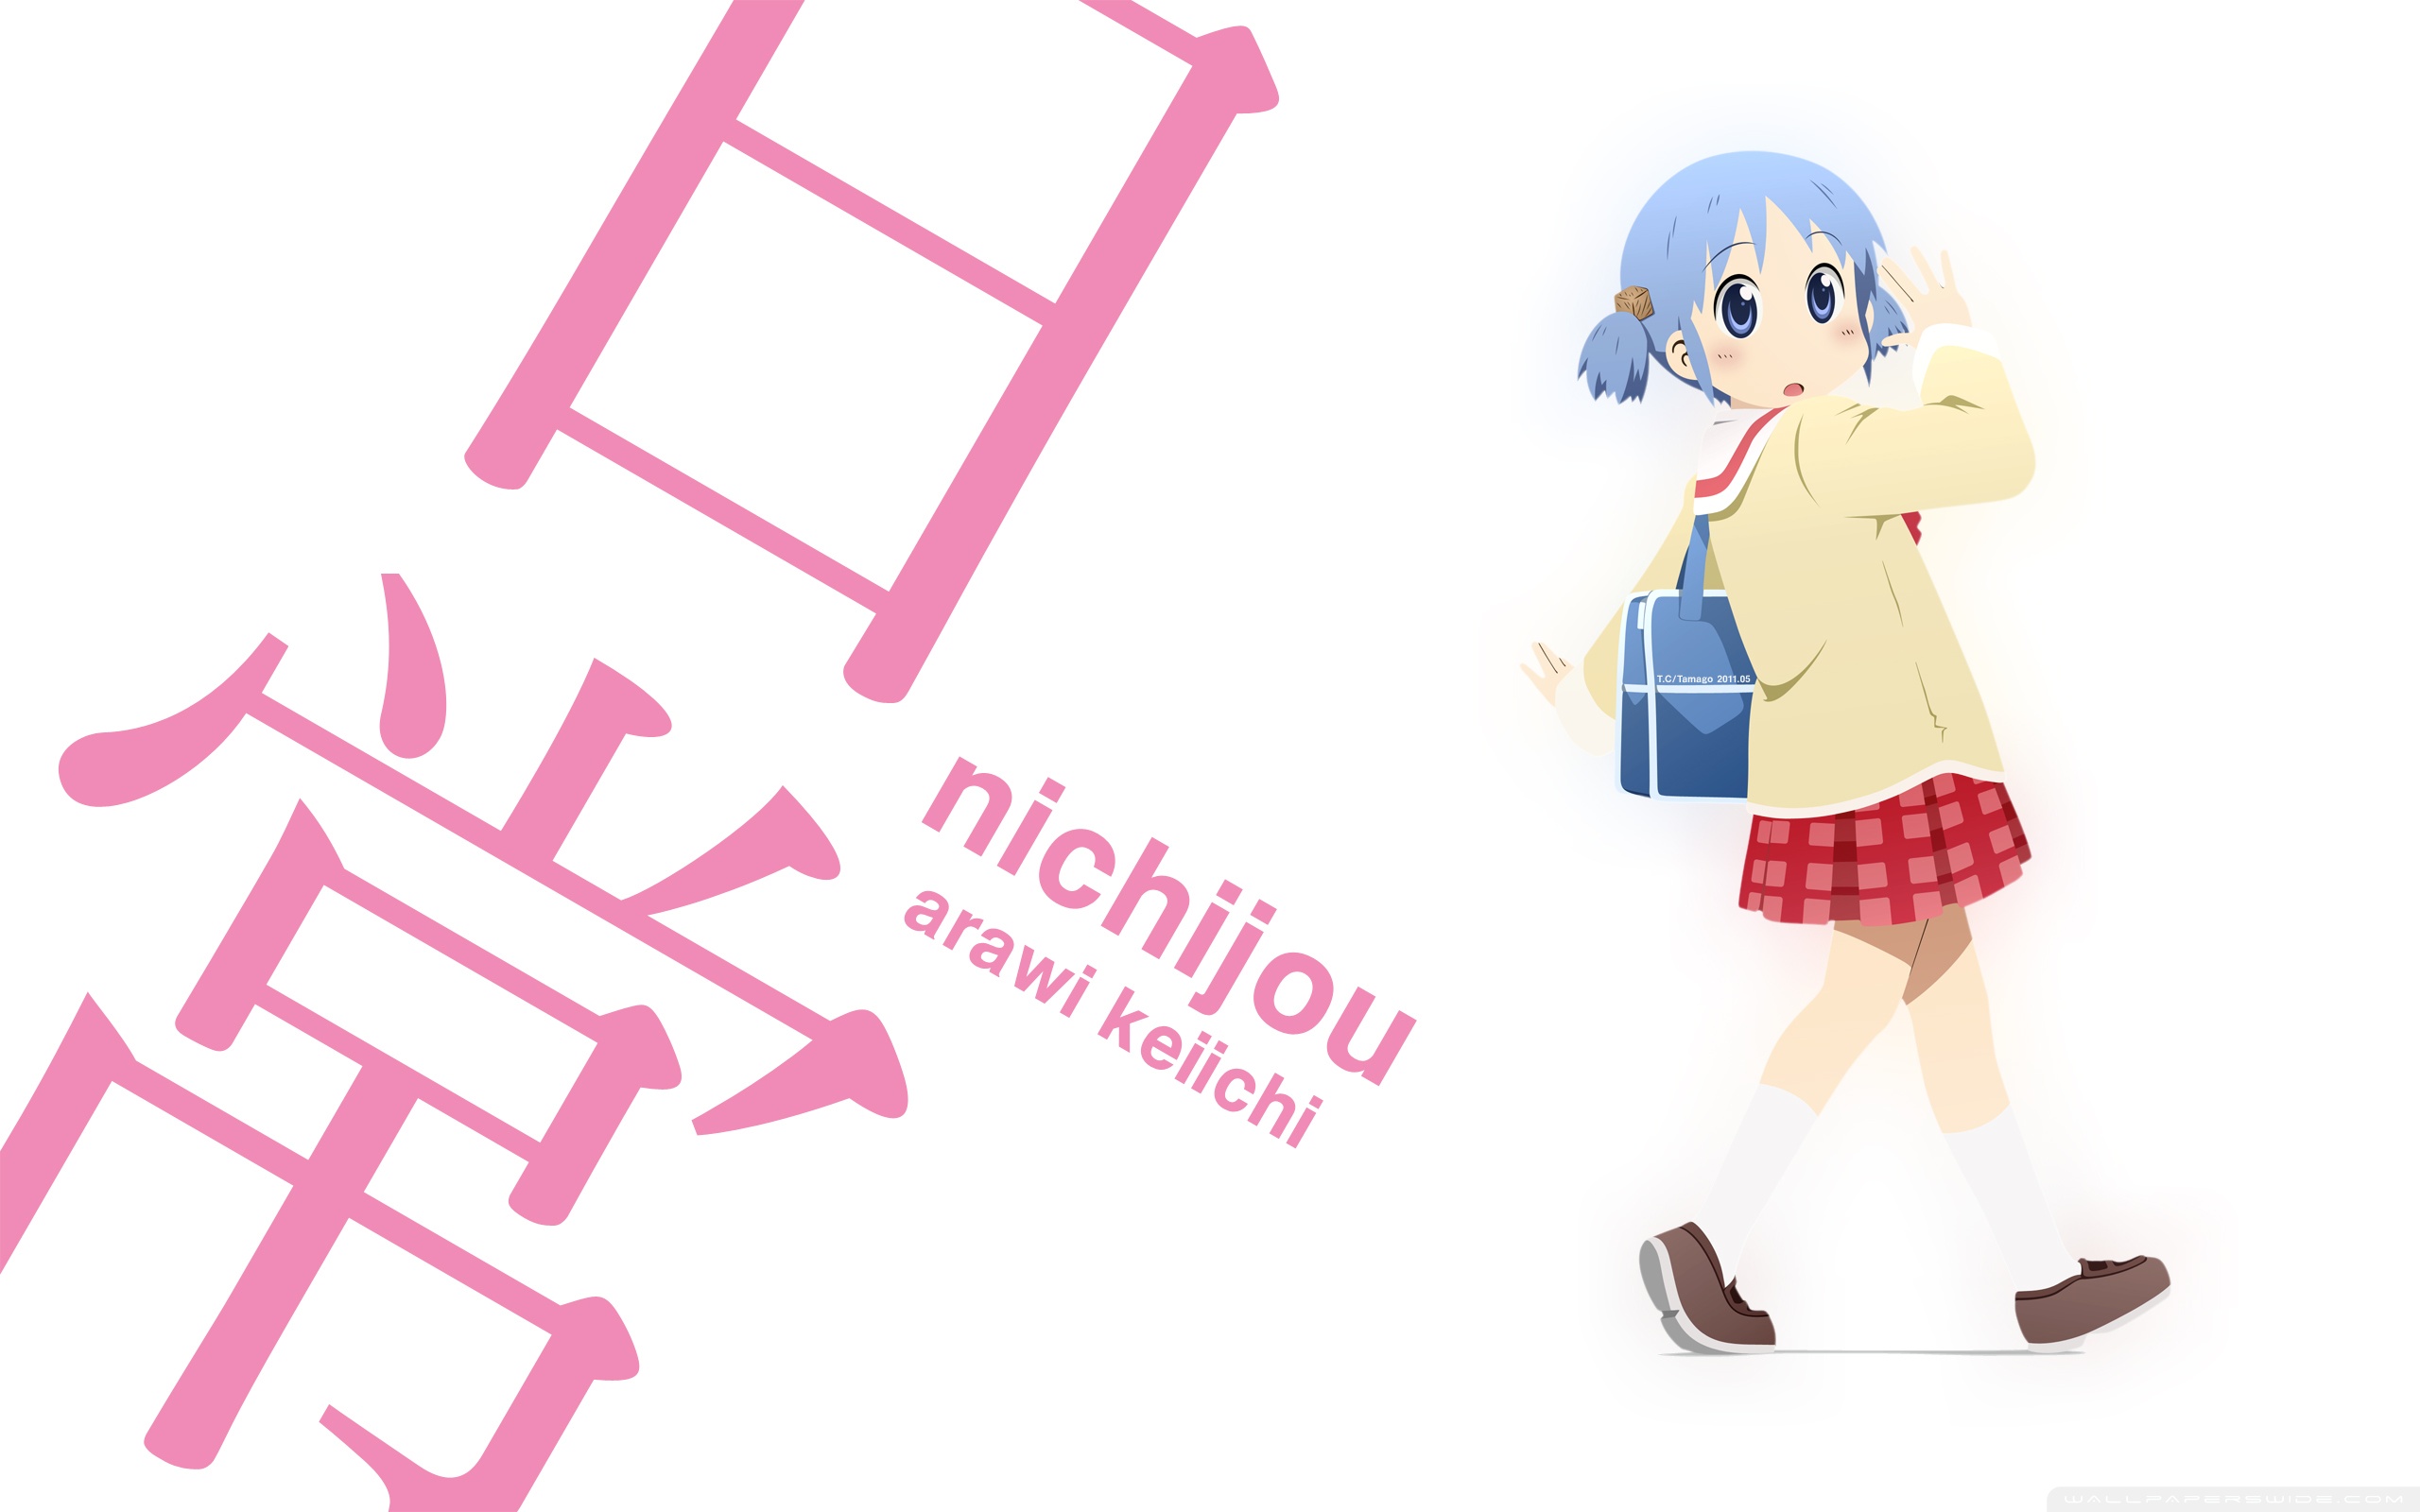 Nichijou Iphone 5 , HD Wallpaper & Backgrounds